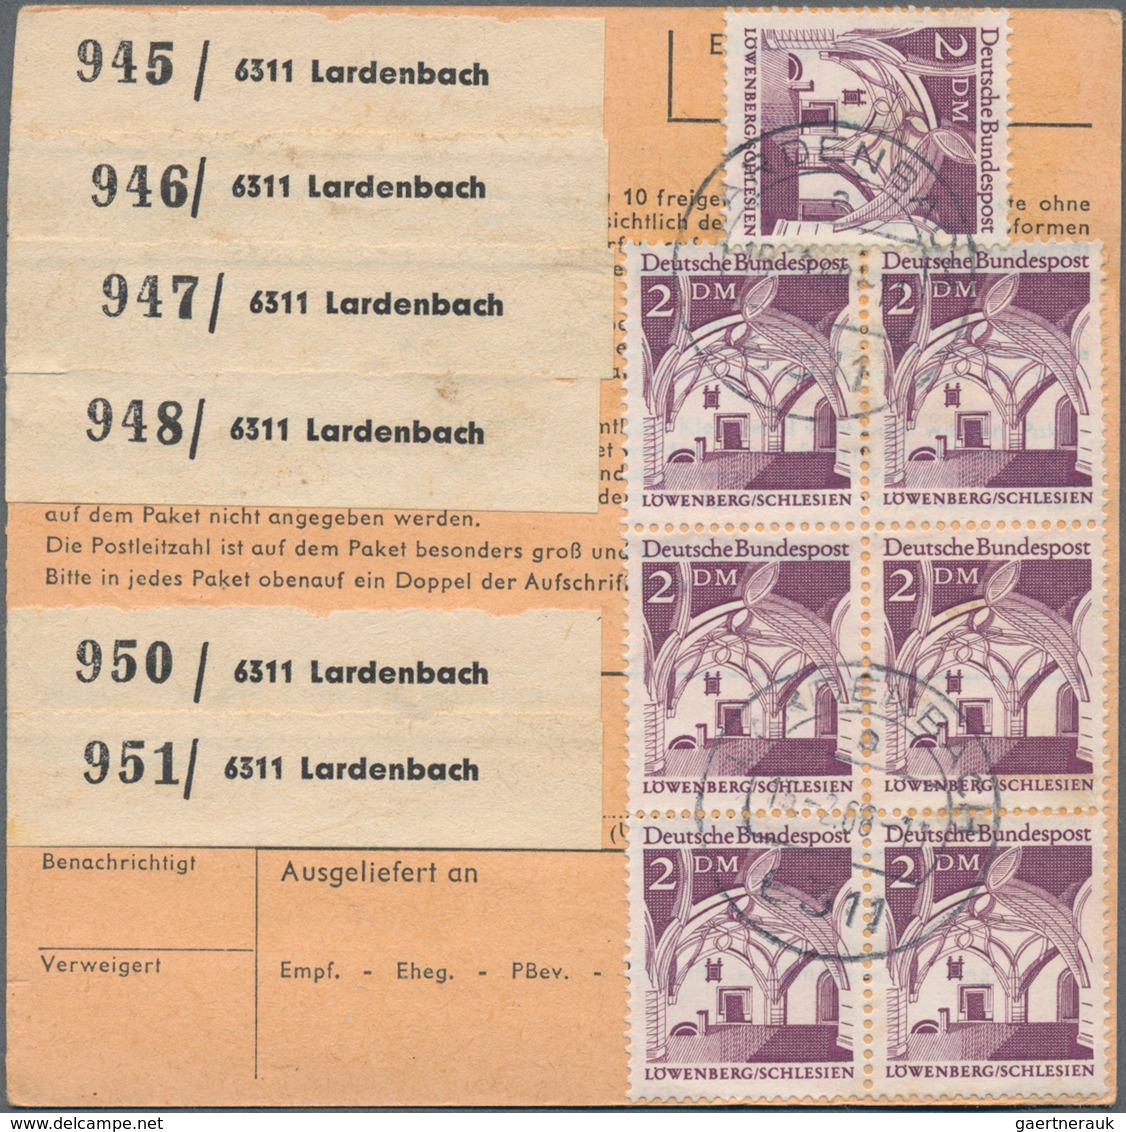 Deutschland: 1830-1990, bunte Mischung mit etlichen hundert Briefen und Belegen ab Vorphila, dabei a